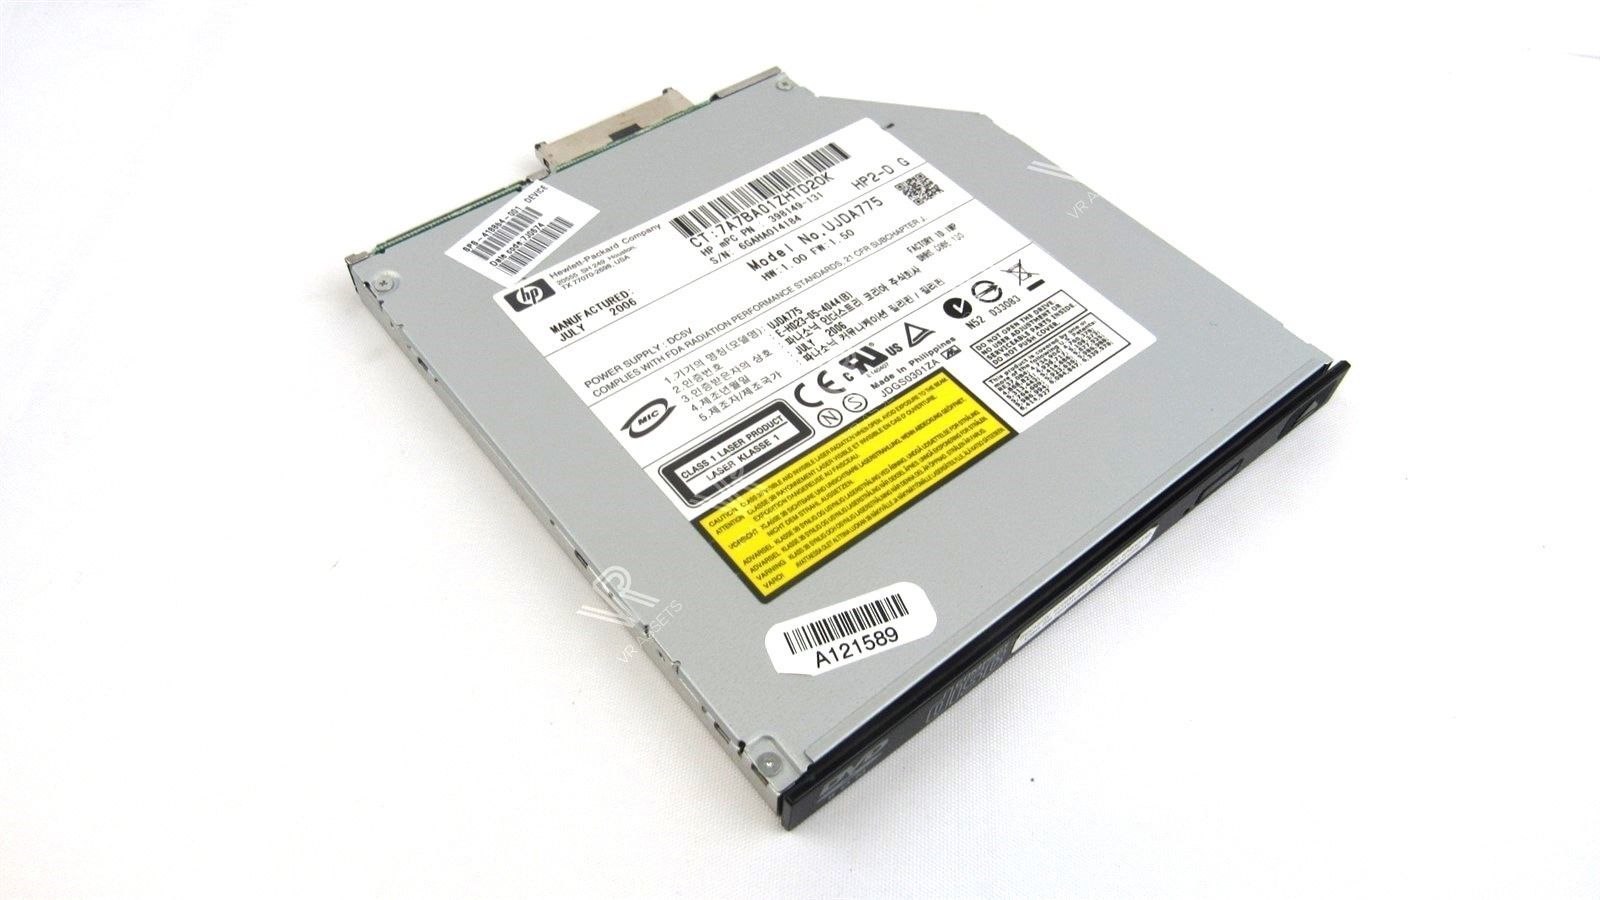 HP Compaq 398149-131 Internal Laptop DVD-RW CD-RW SATA Drive UJDA775 with Bezel